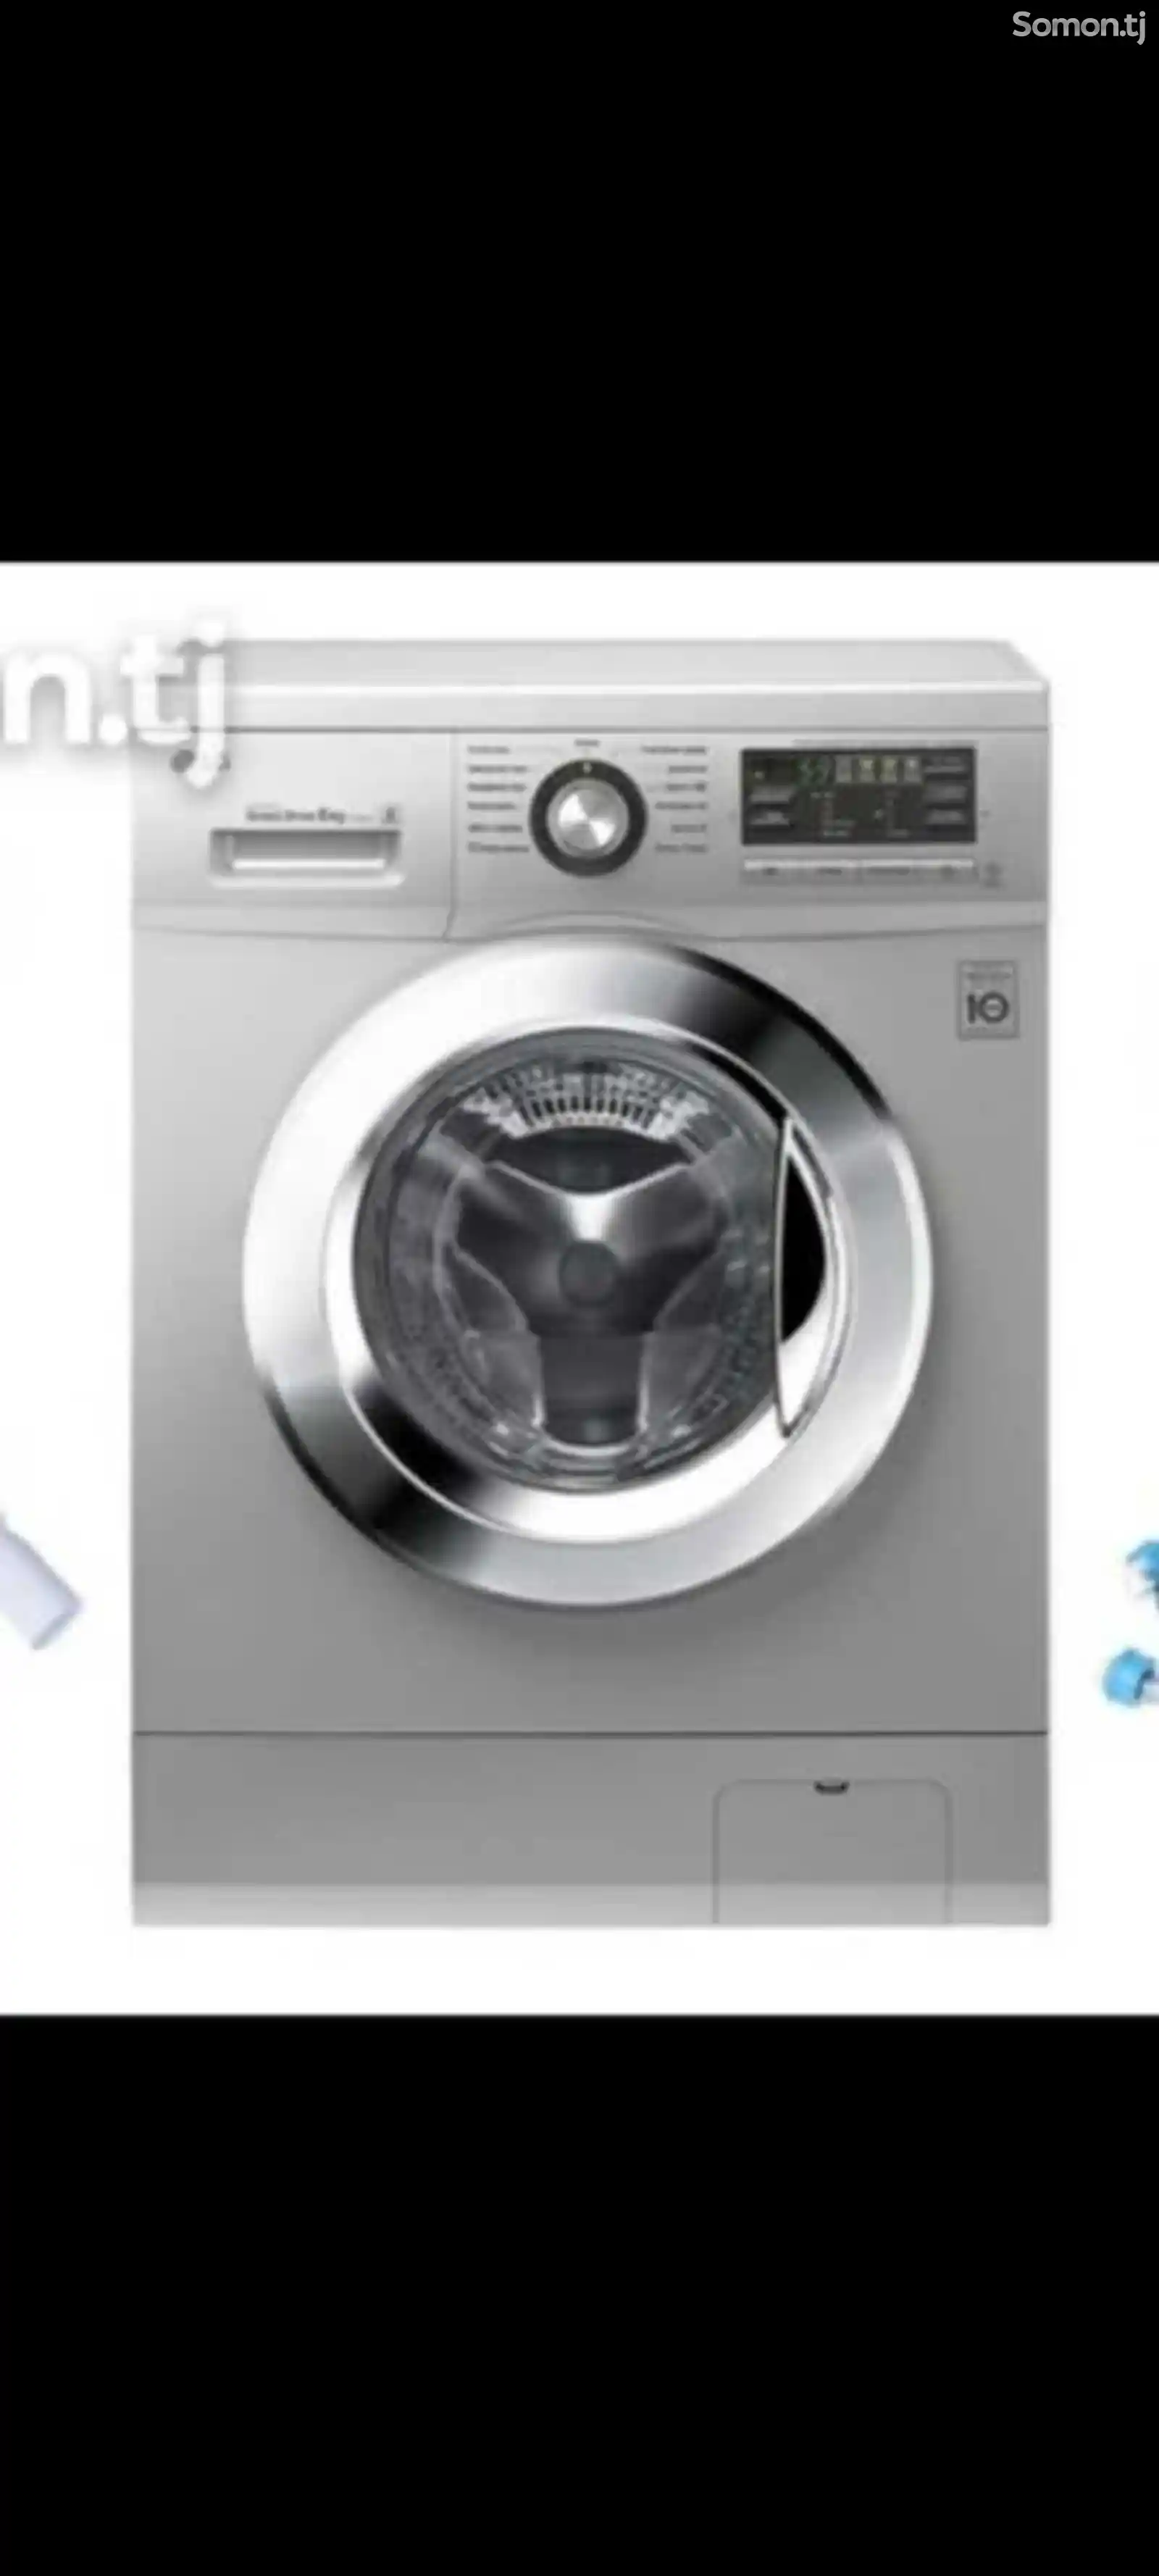 Услуги ремонта и установки стиральных машин